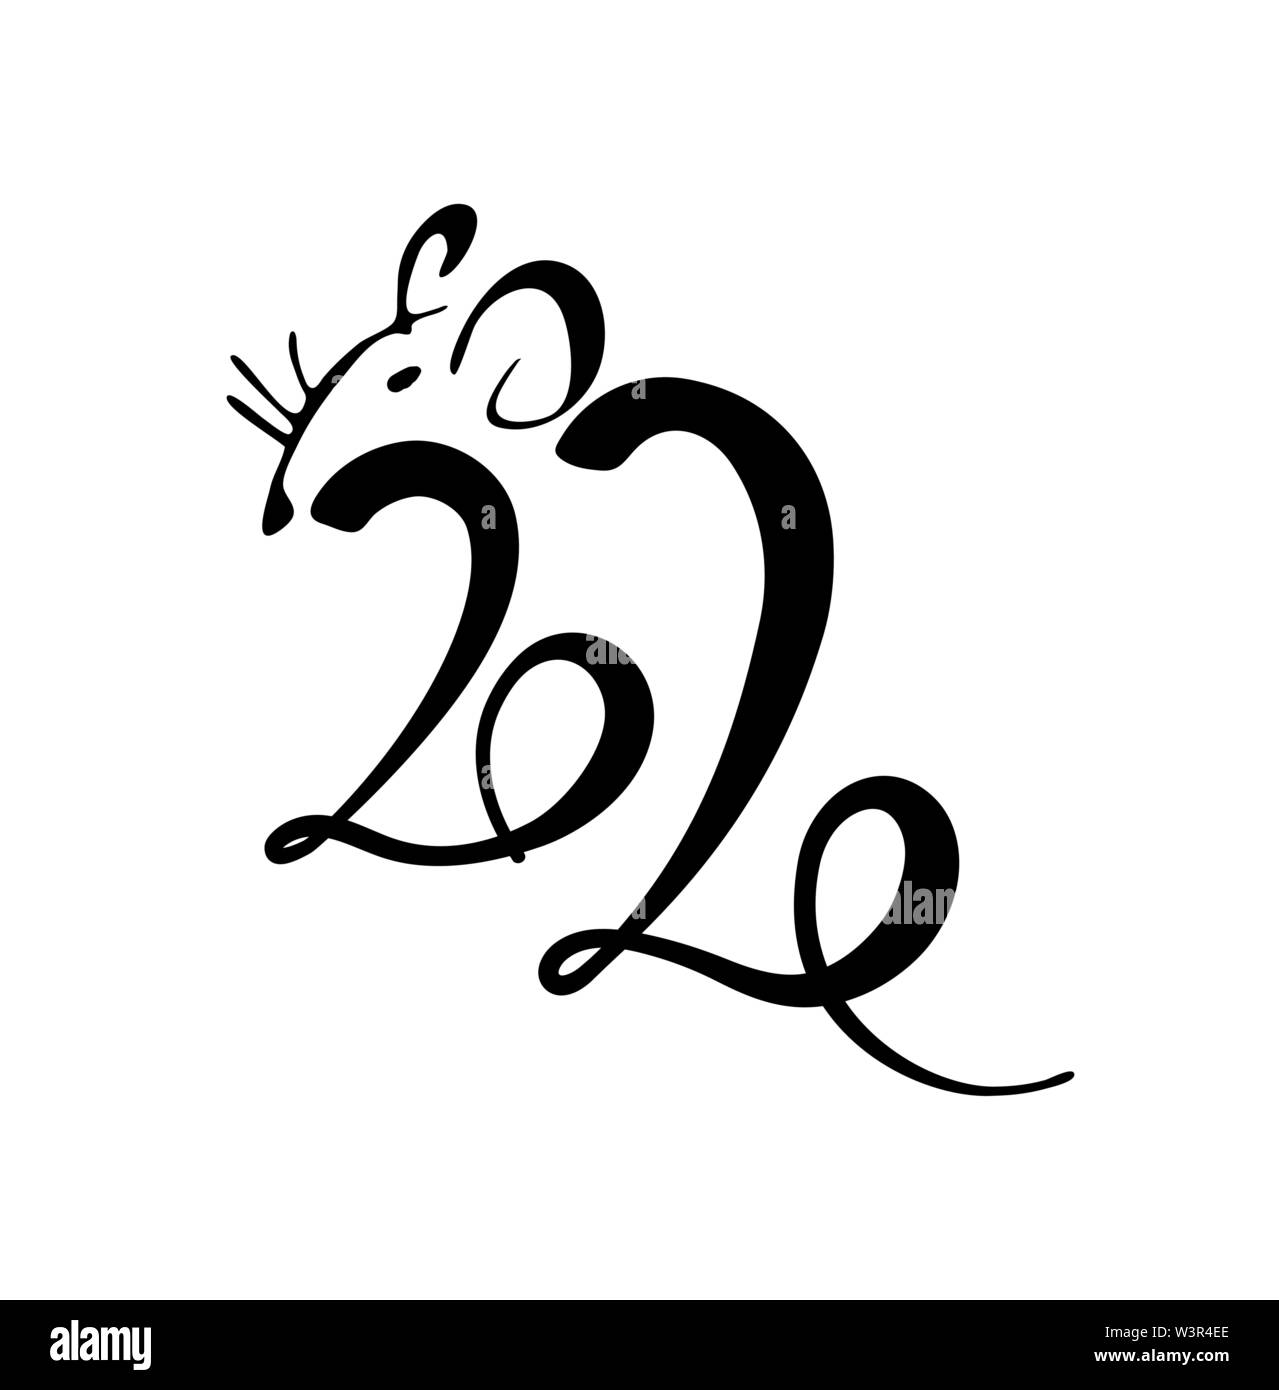 Lettrage en 2020 appelée rat. 2020 année de rat. Logo lettrage. L'élément décoratif pour le calendrier. Année du rat blanc. Illustration vectorielle Stock. Illustration de Vecteur